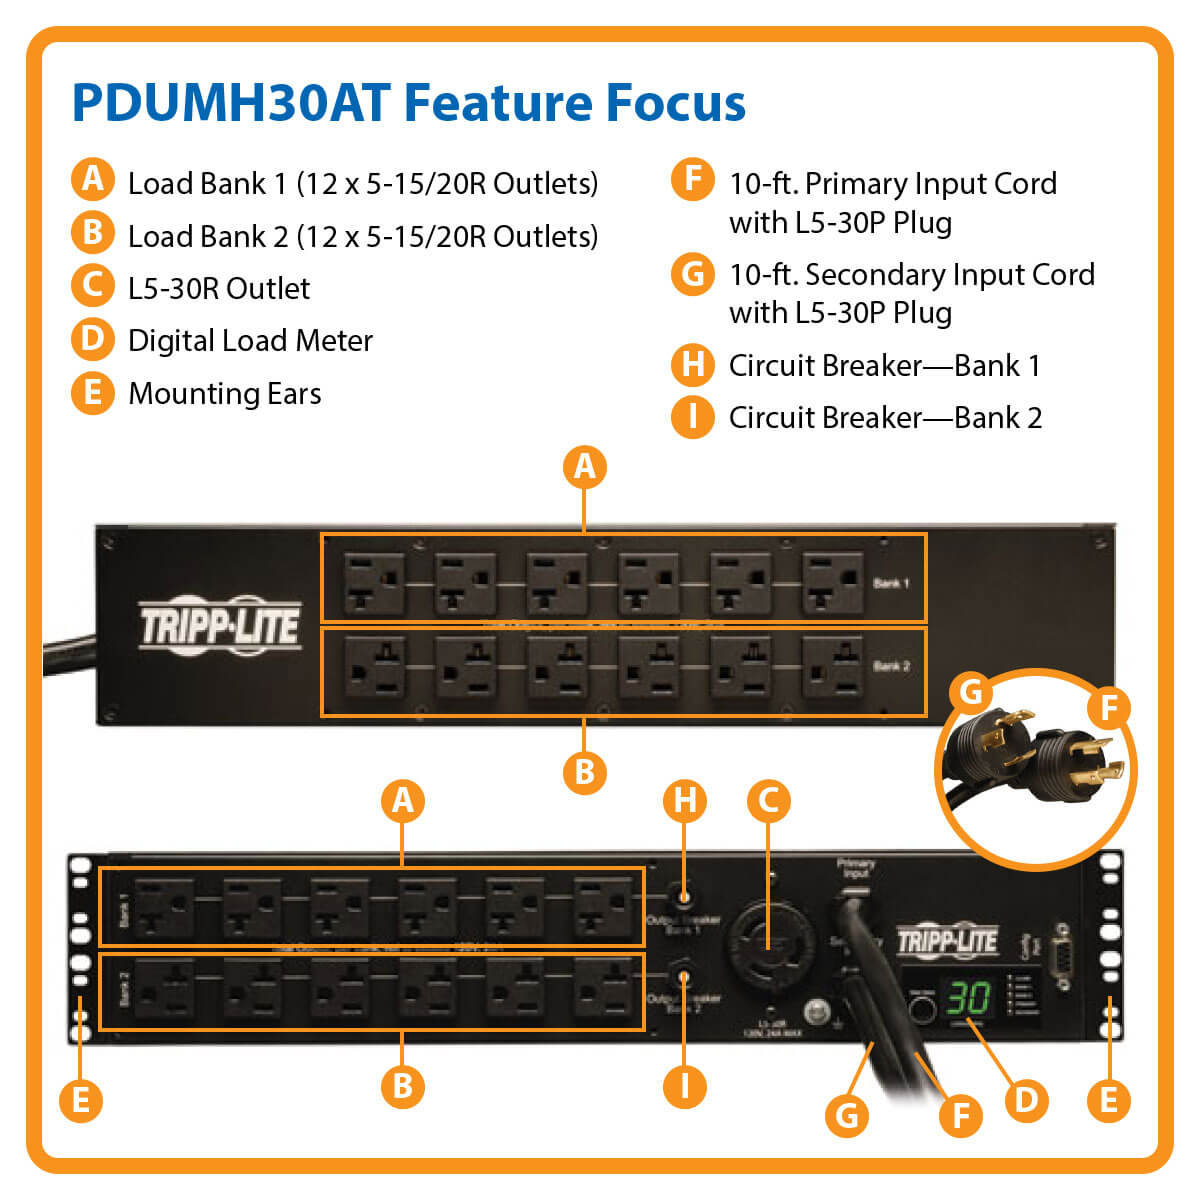 PDUMH30AT highlights